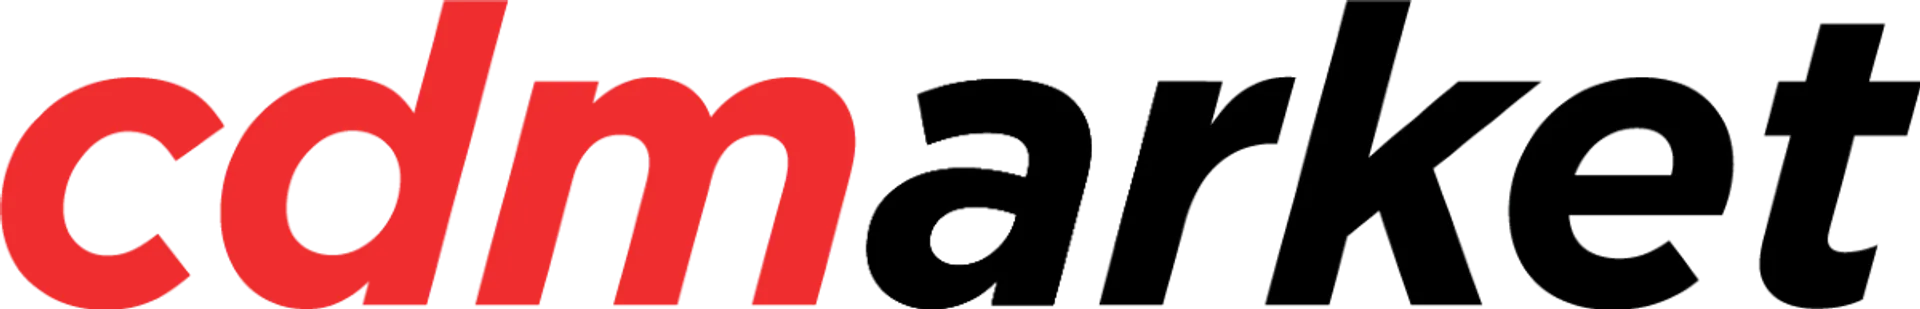 CD MARKET logo